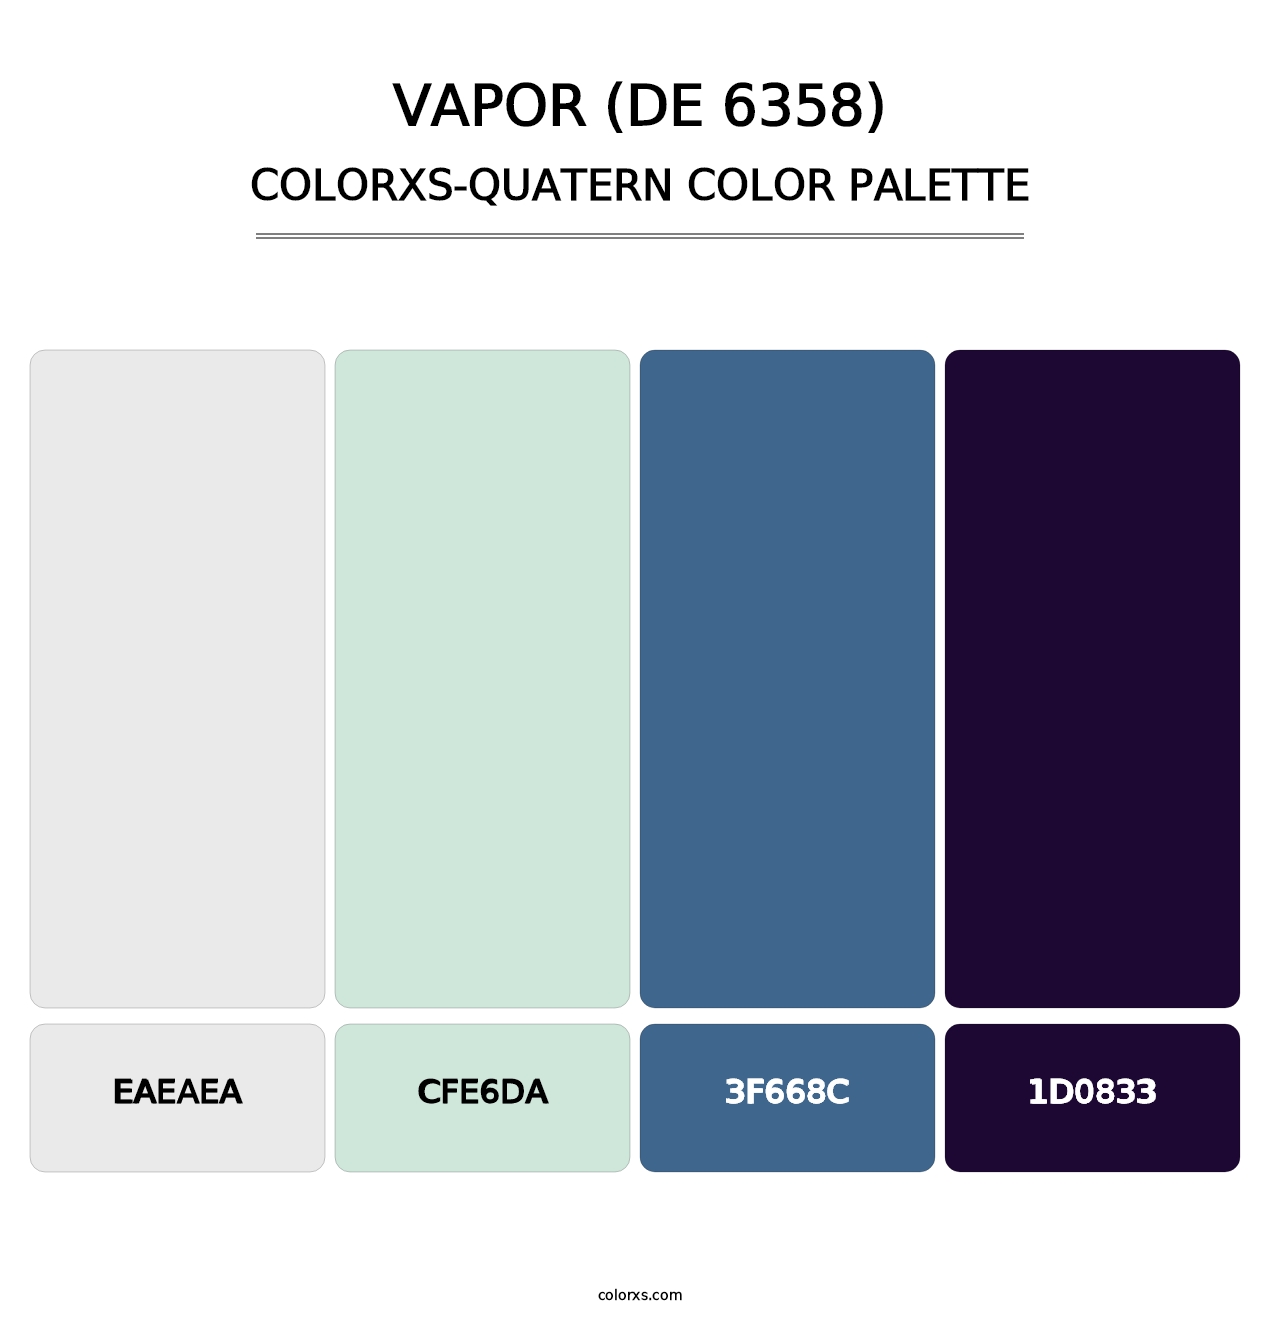 Vapor (DE 6358) - Colorxs Quatern Palette